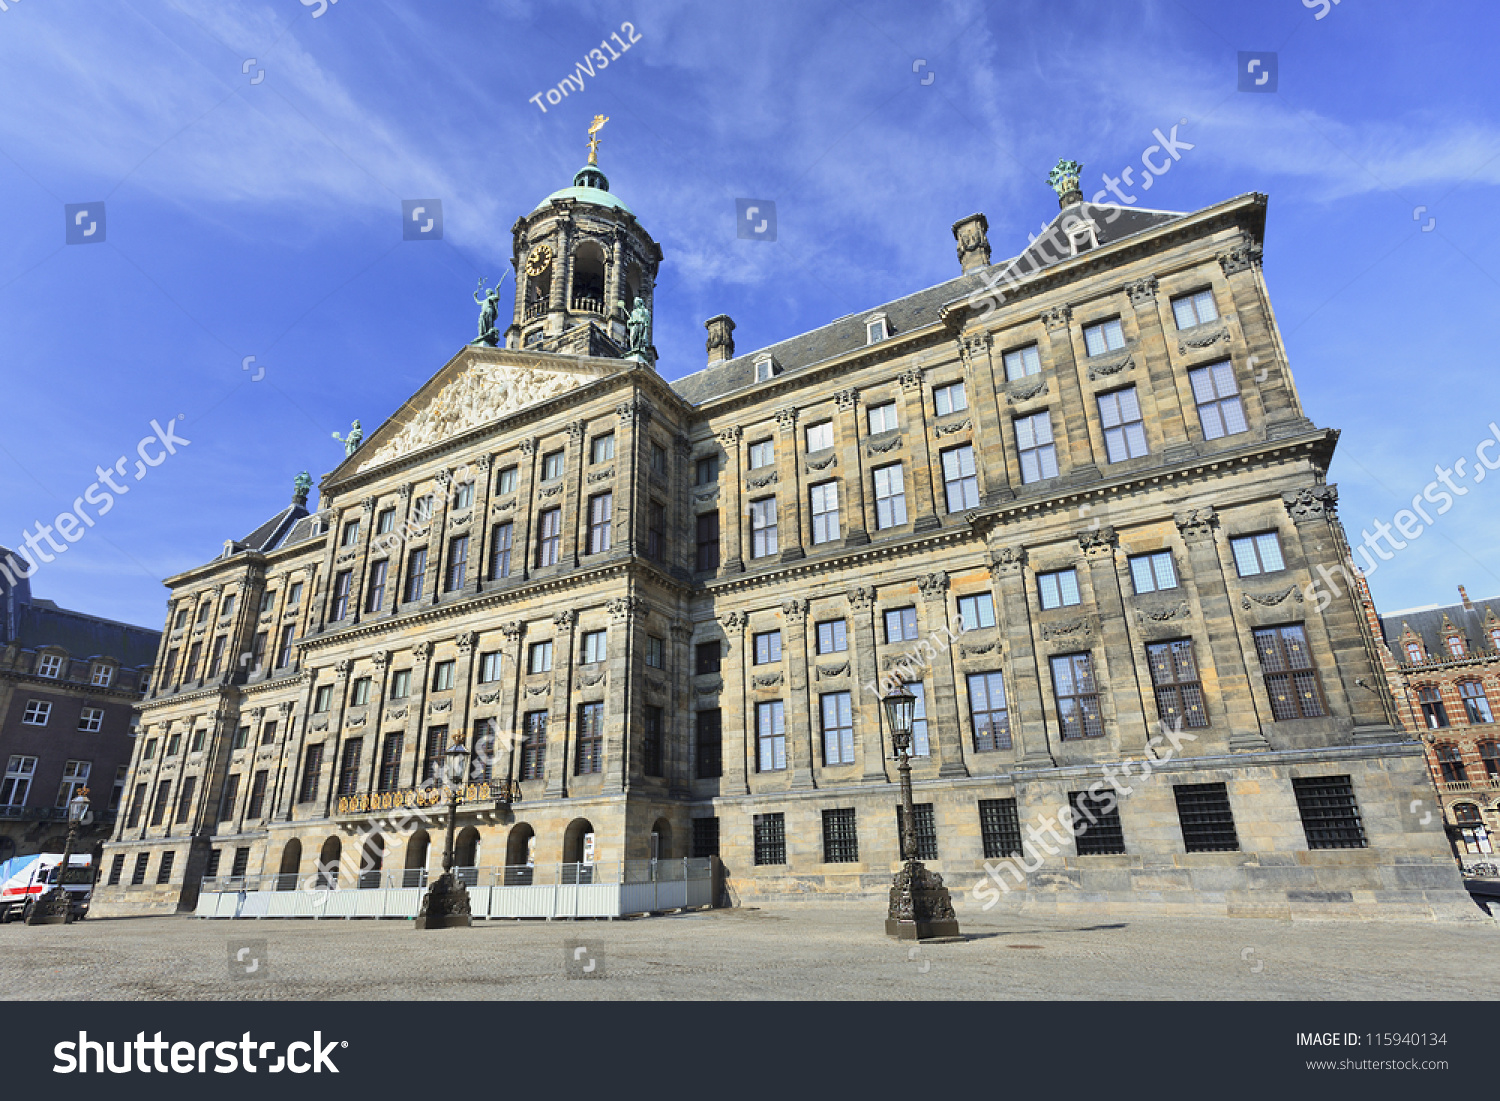 アムステルダムのダム広場にある王宮 17世紀のオランダ黄金時代に市役所として建てられた の写真素材 今すぐ編集